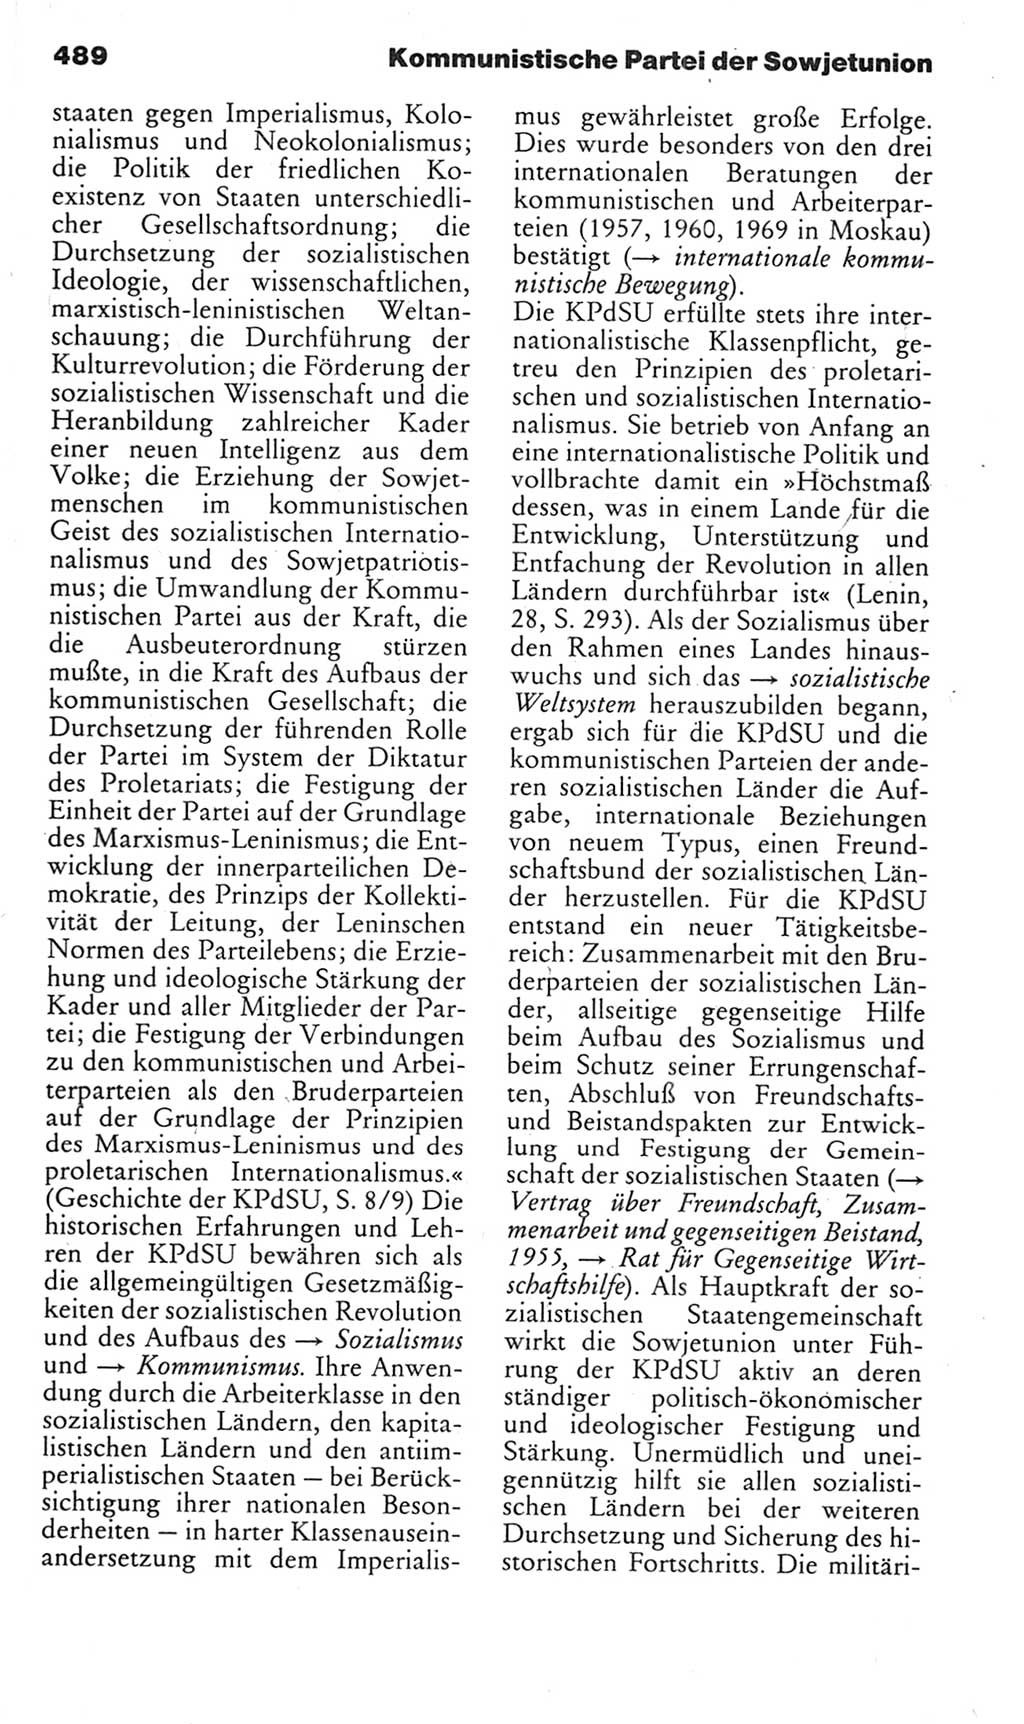 Kleines politisches Wörterbuch [Deutsche Demokratische Republik (DDR)] 1985, Seite 489 (Kl. pol. Wb. DDR 1985, S. 489)